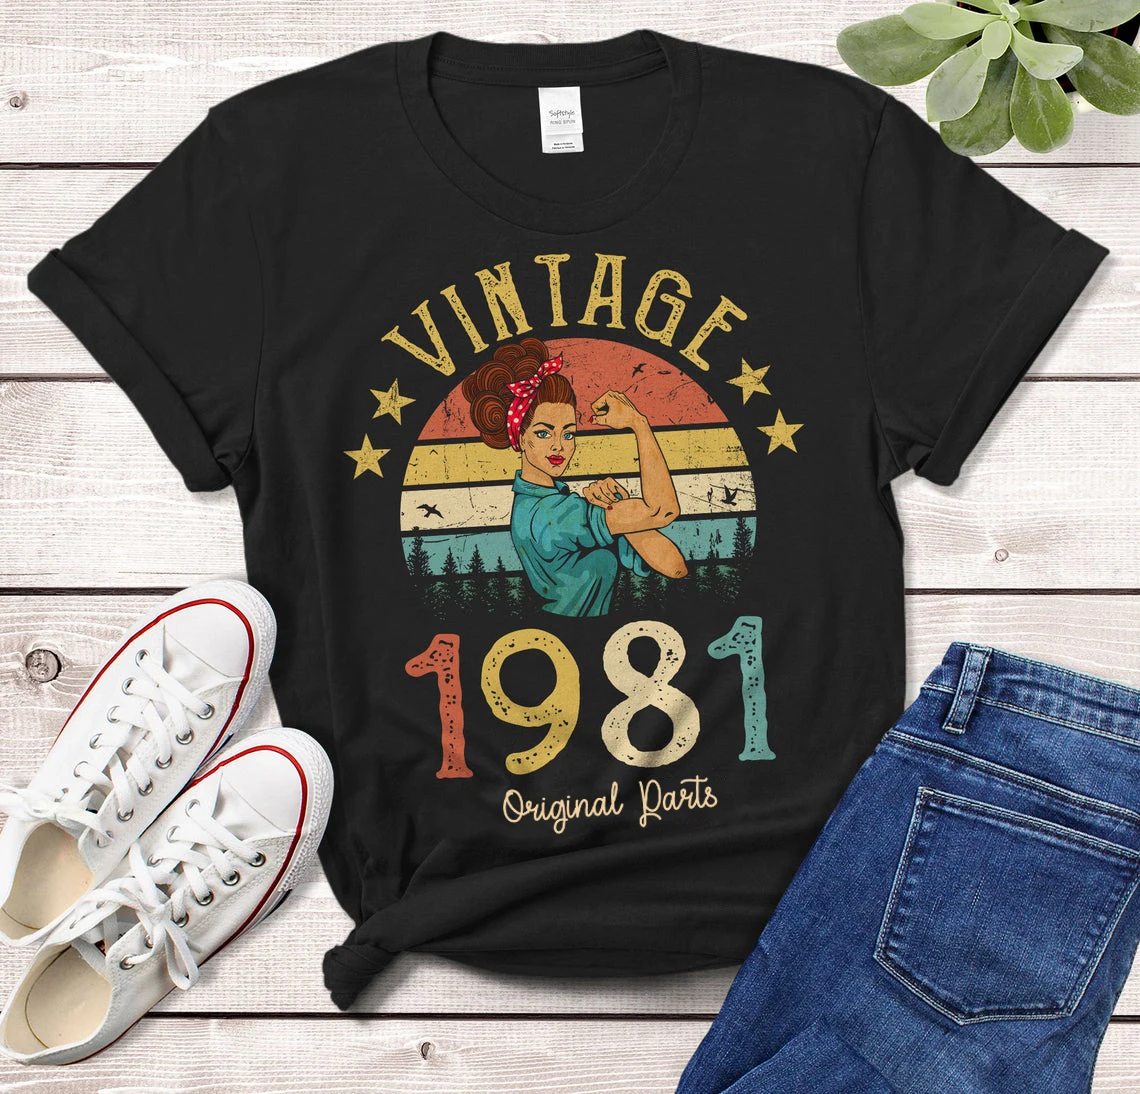 

Винтажная футболка с оригинальными деталями, модель 1981 года, футболка в стиле ретро для девушек 40 лет, идея подарка на день рождения